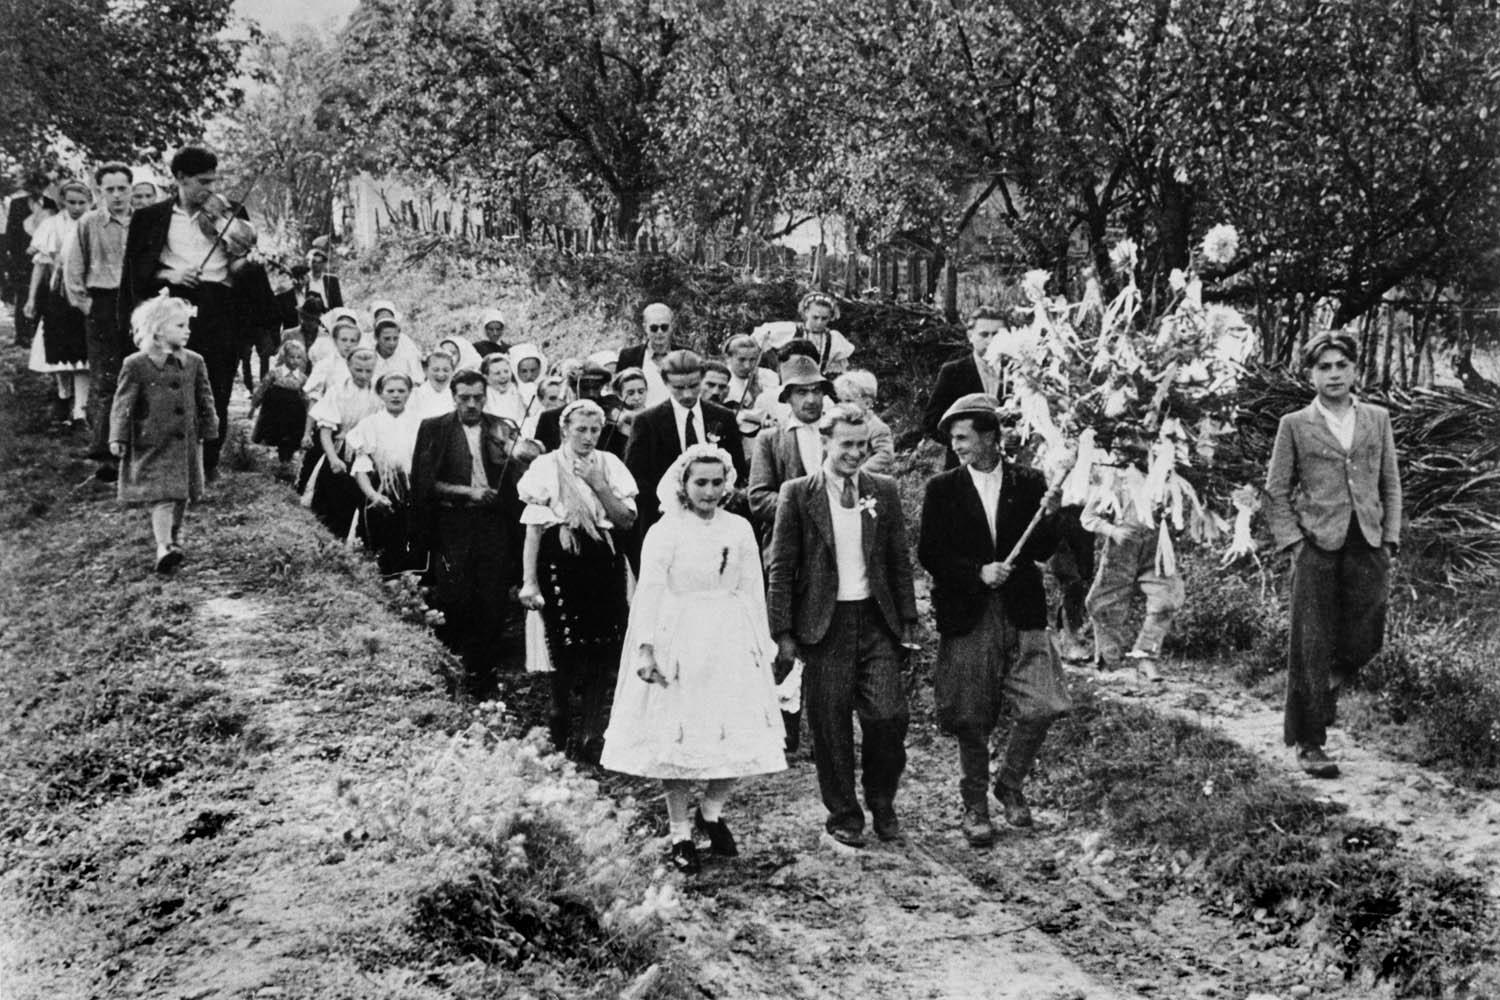 A wedding in Furolac, Czechoslovakia, 1947.